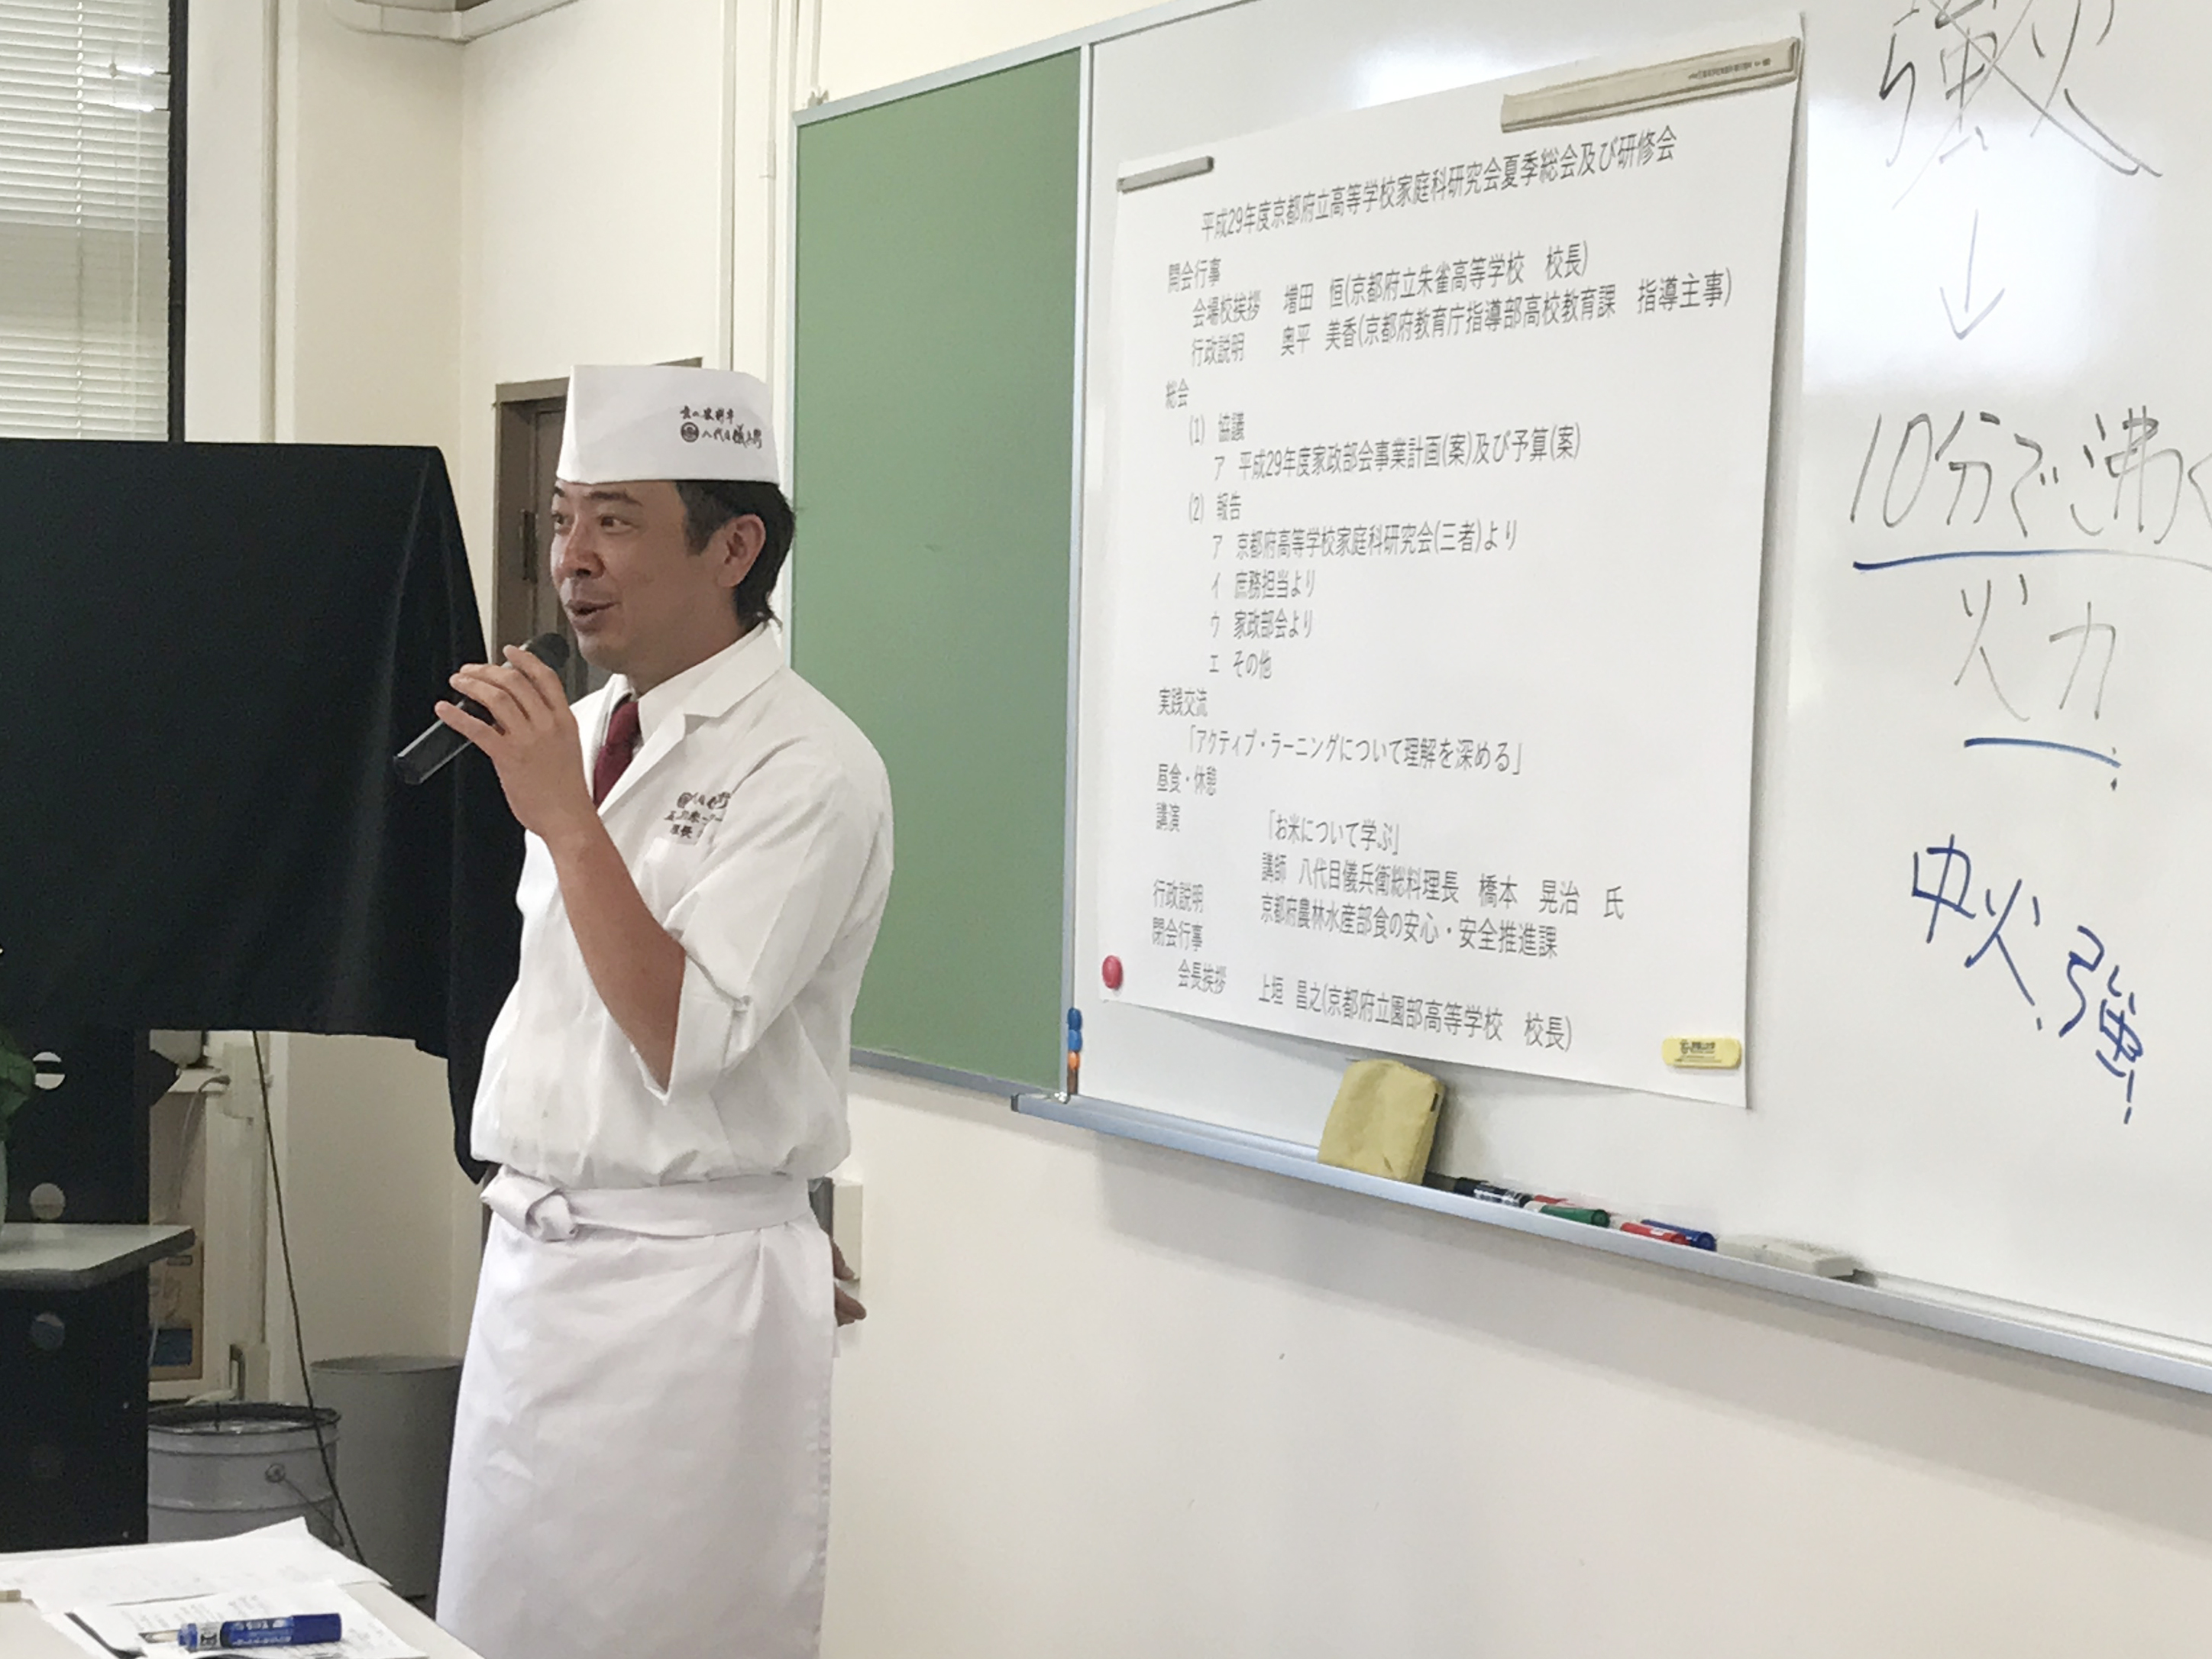 京都府立高等学校の家庭科研修会にて講演いたしました。